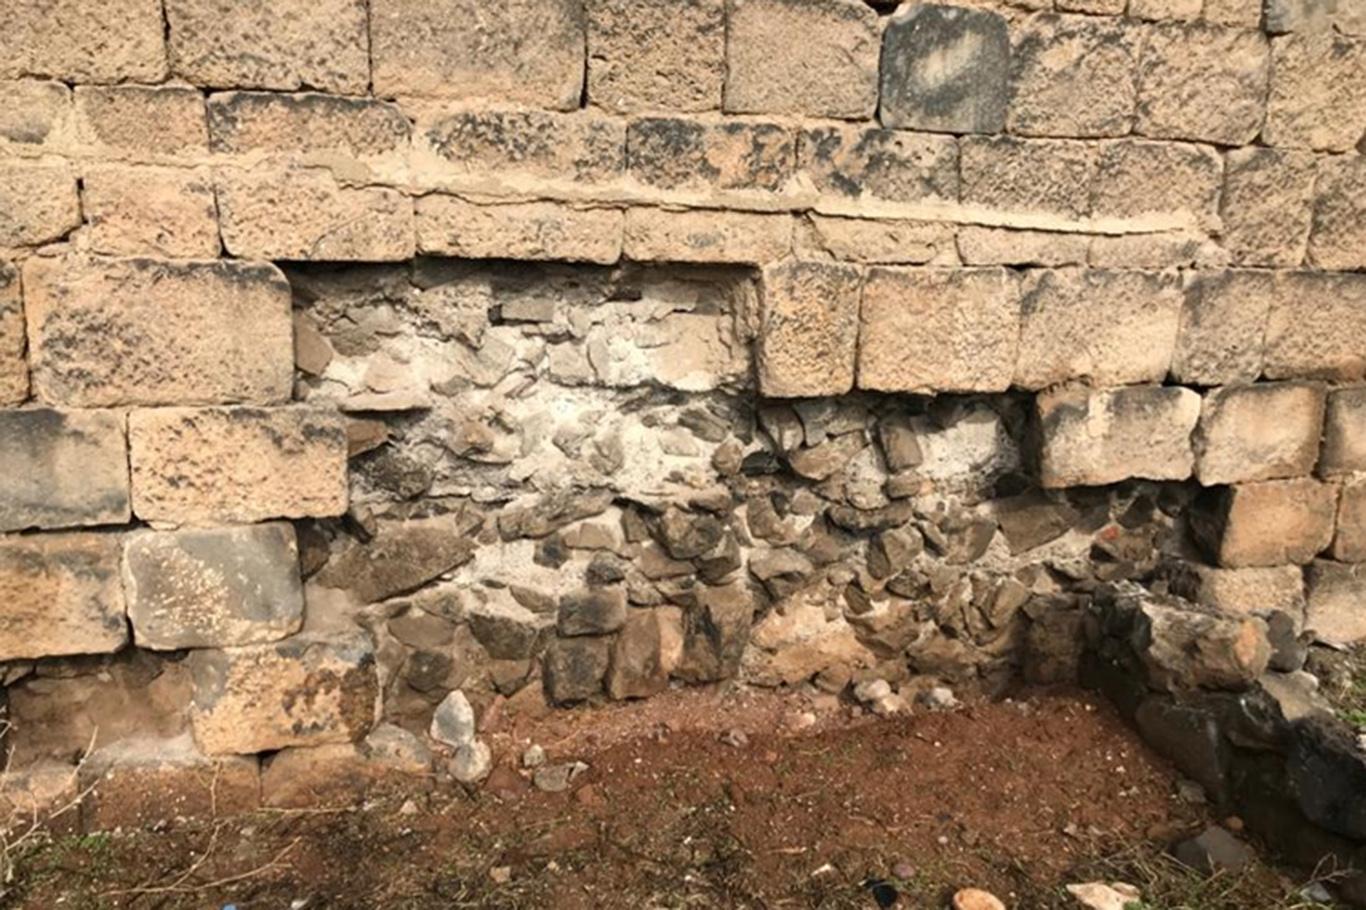 DİERG: Diyarbakır Kalesi'nden bir taş almak da tarihi eser kaçakçılığıdır